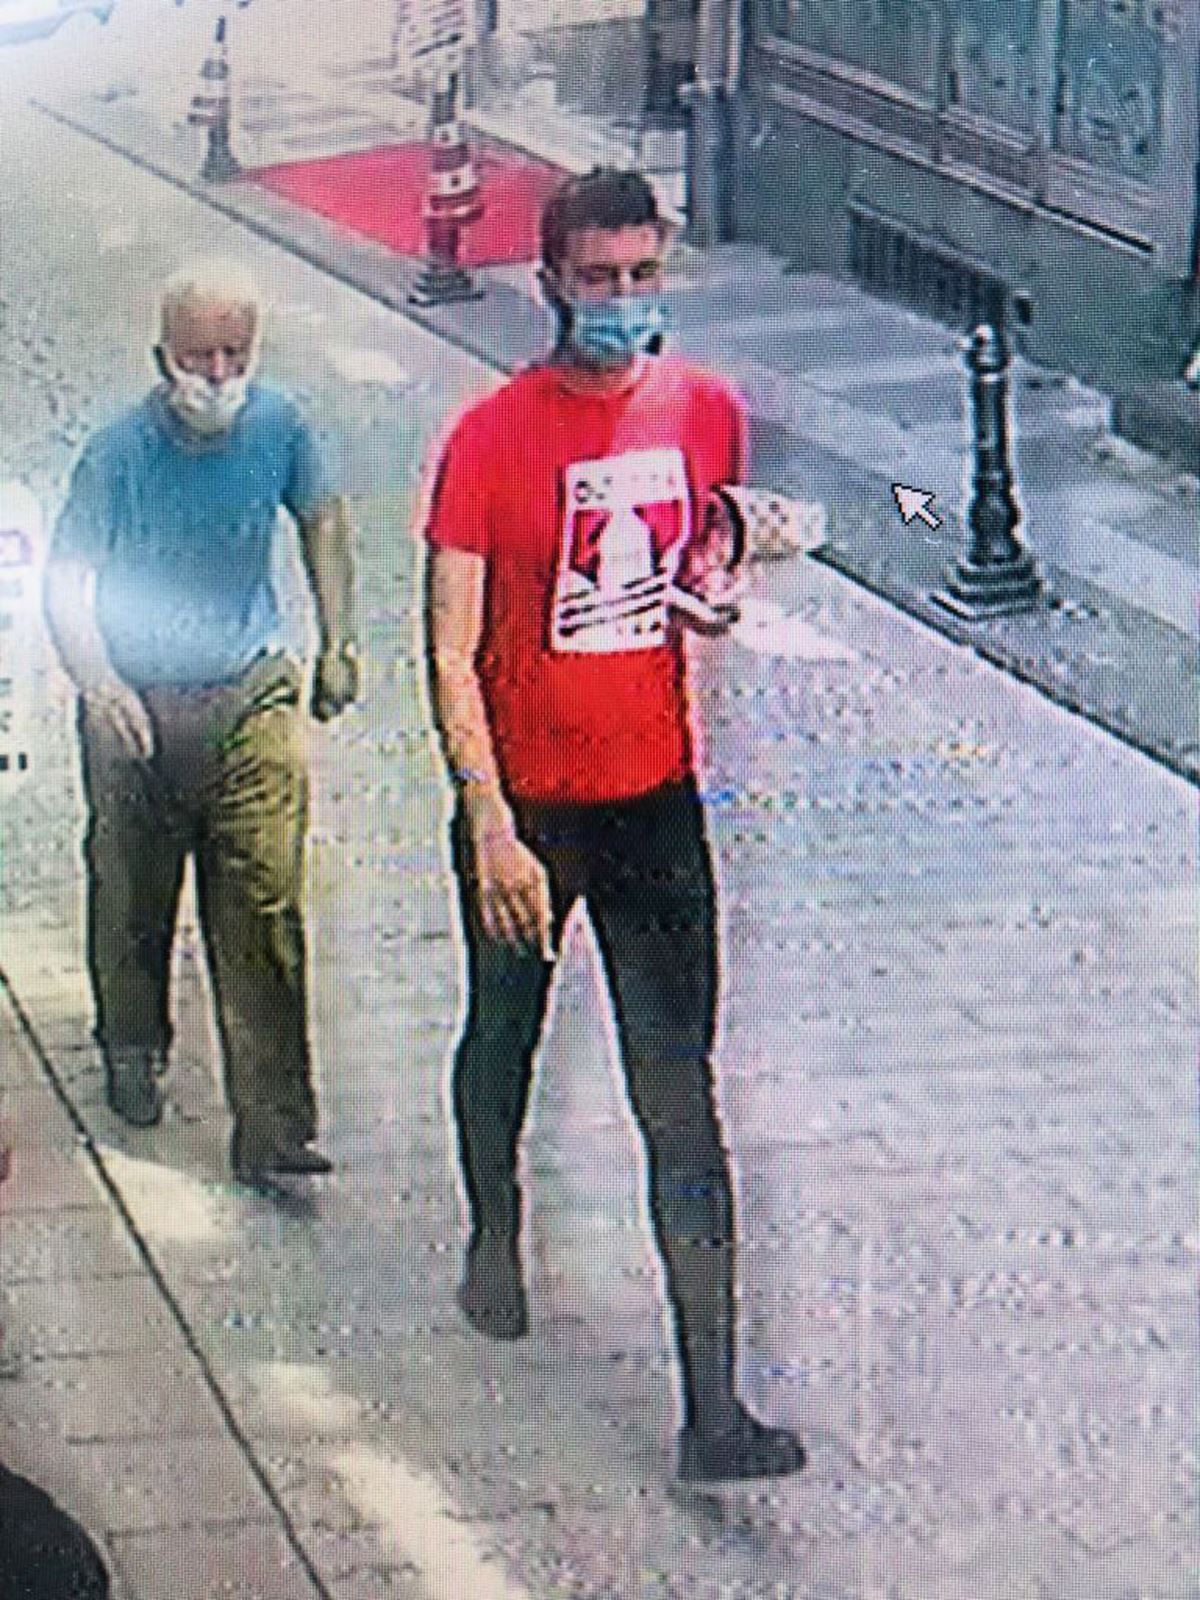 Kadıköy'de engelli çocuğun tedavi parasını çalan şüpheli kameralara yakalandı